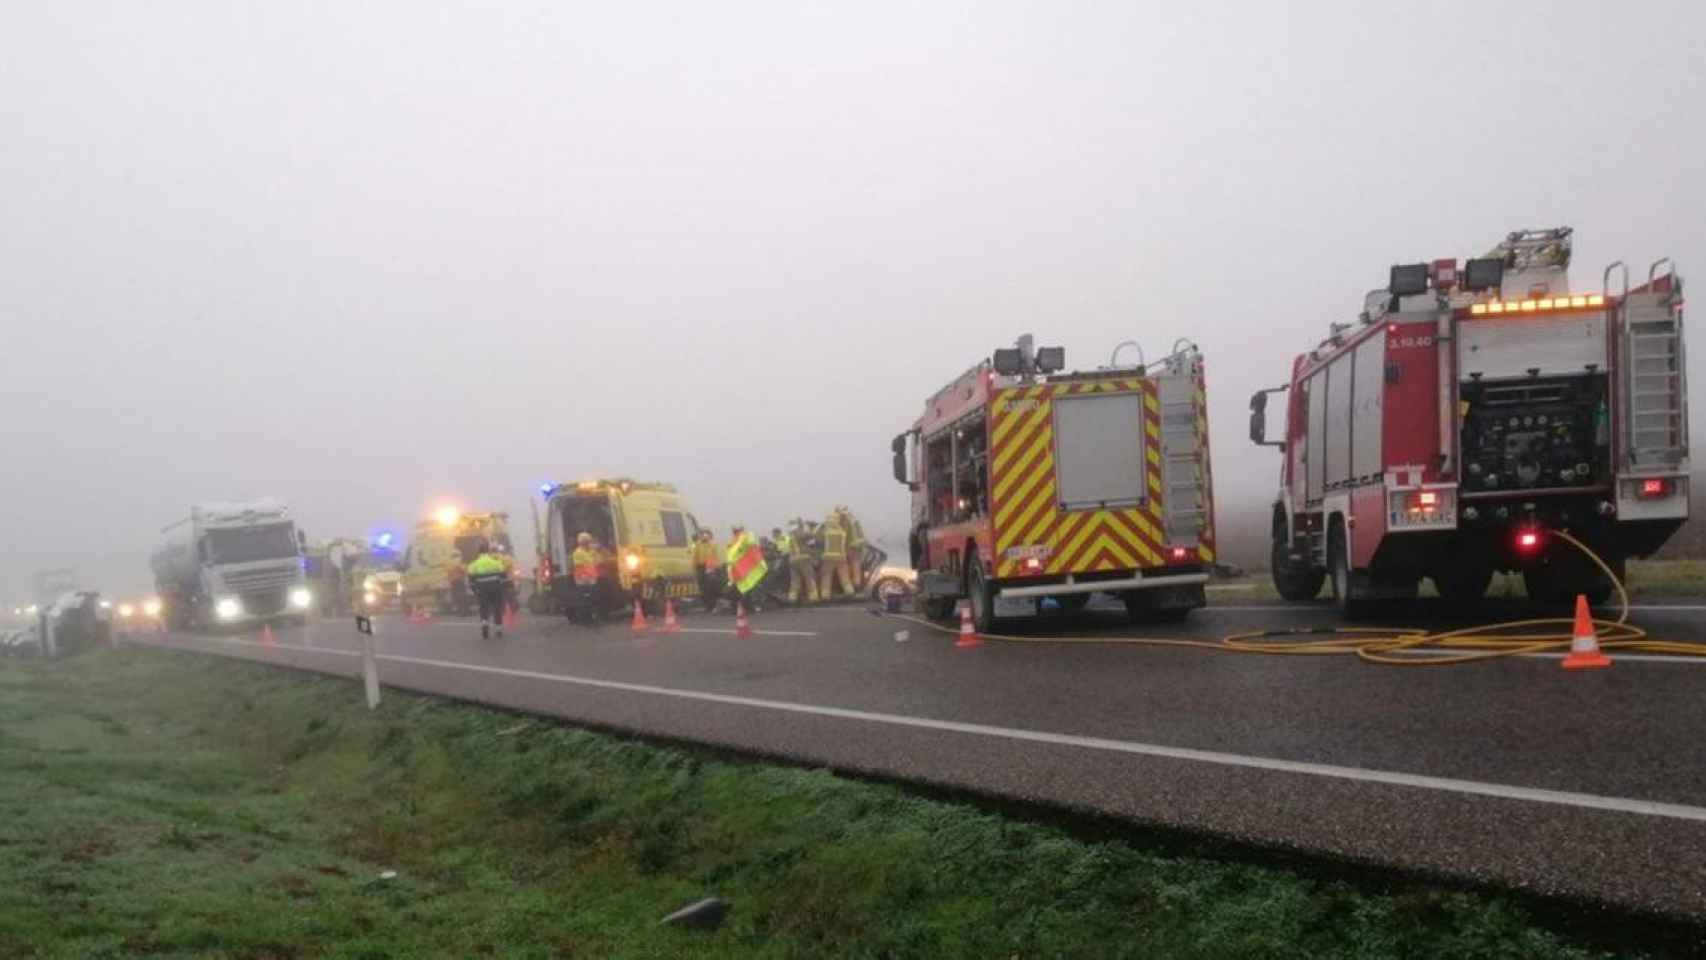 Dotaciones de bomberos, ambulancias y Mossos d'Esquadra en el accidente múltiple de Torregrossa (Lleida) / BOMBERS